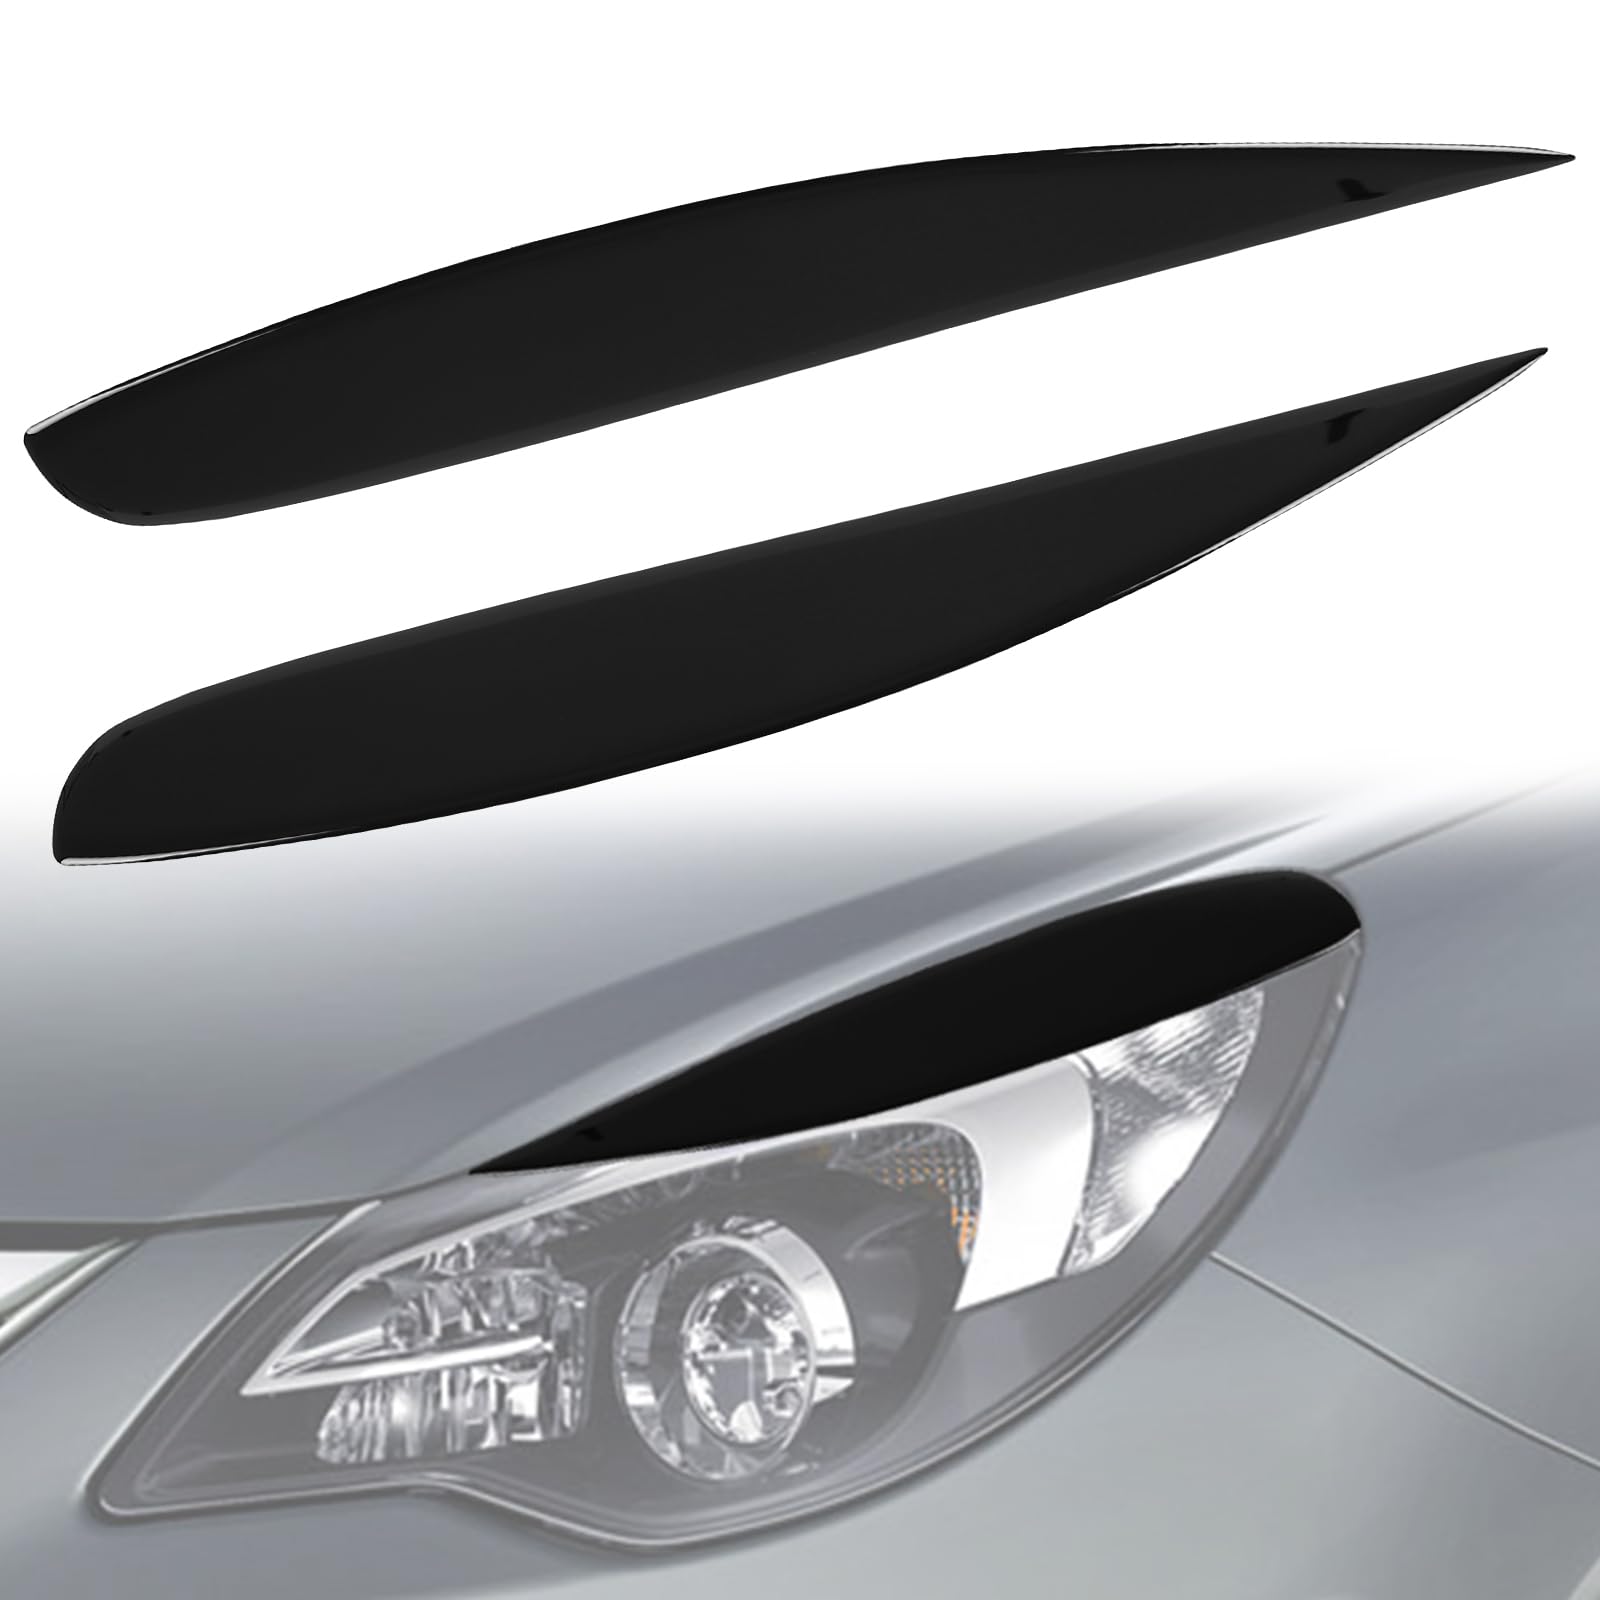 1 Paar Scheinwerfer Augenbrauen Ersatz für Opel Corsa D 2006-2014, Scheinwerfer Augenlid Augenbrauenabdeckung, Scheinwerfer Augenlid Aufkleber (für Corsa D 2006-2014) von Soekodu